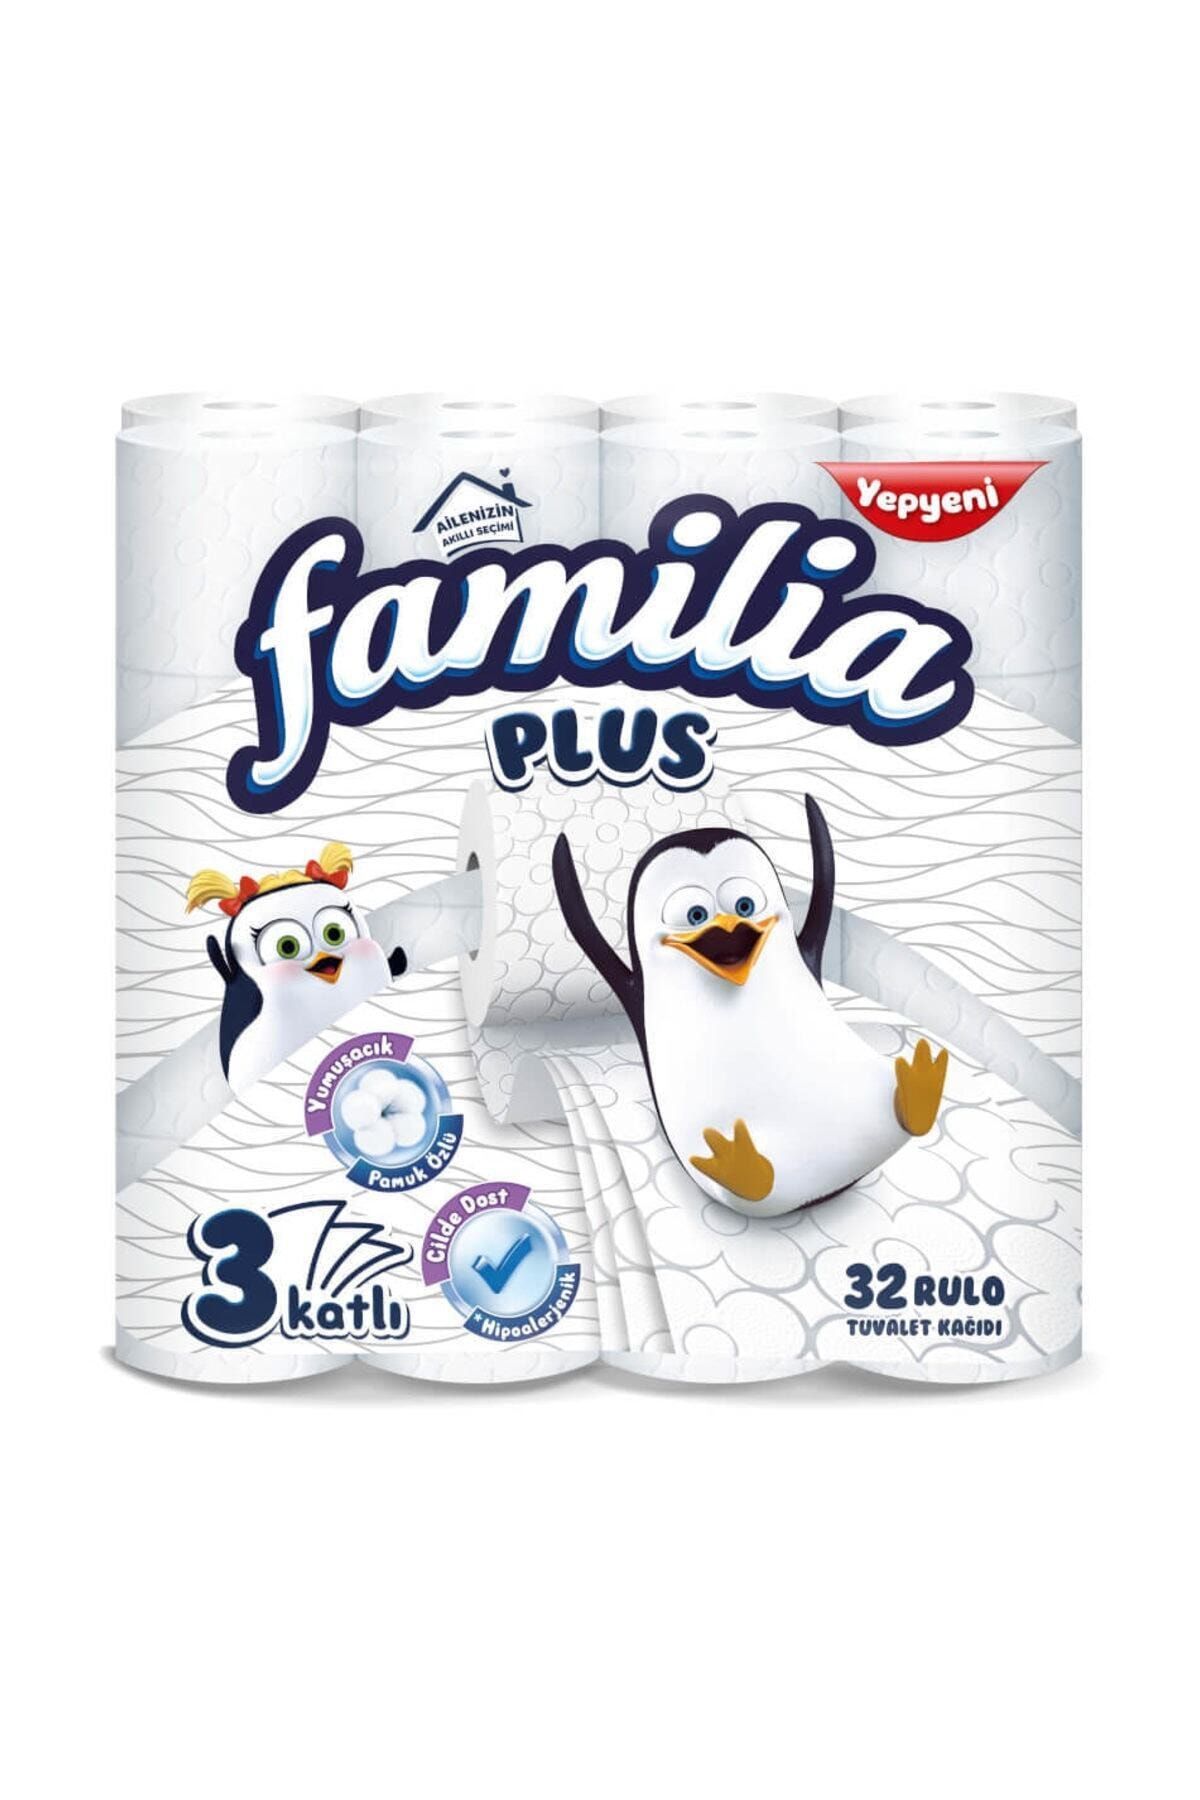 Familia Plus 32 Rulo Tuvalet Kağıdı 3 Katlı